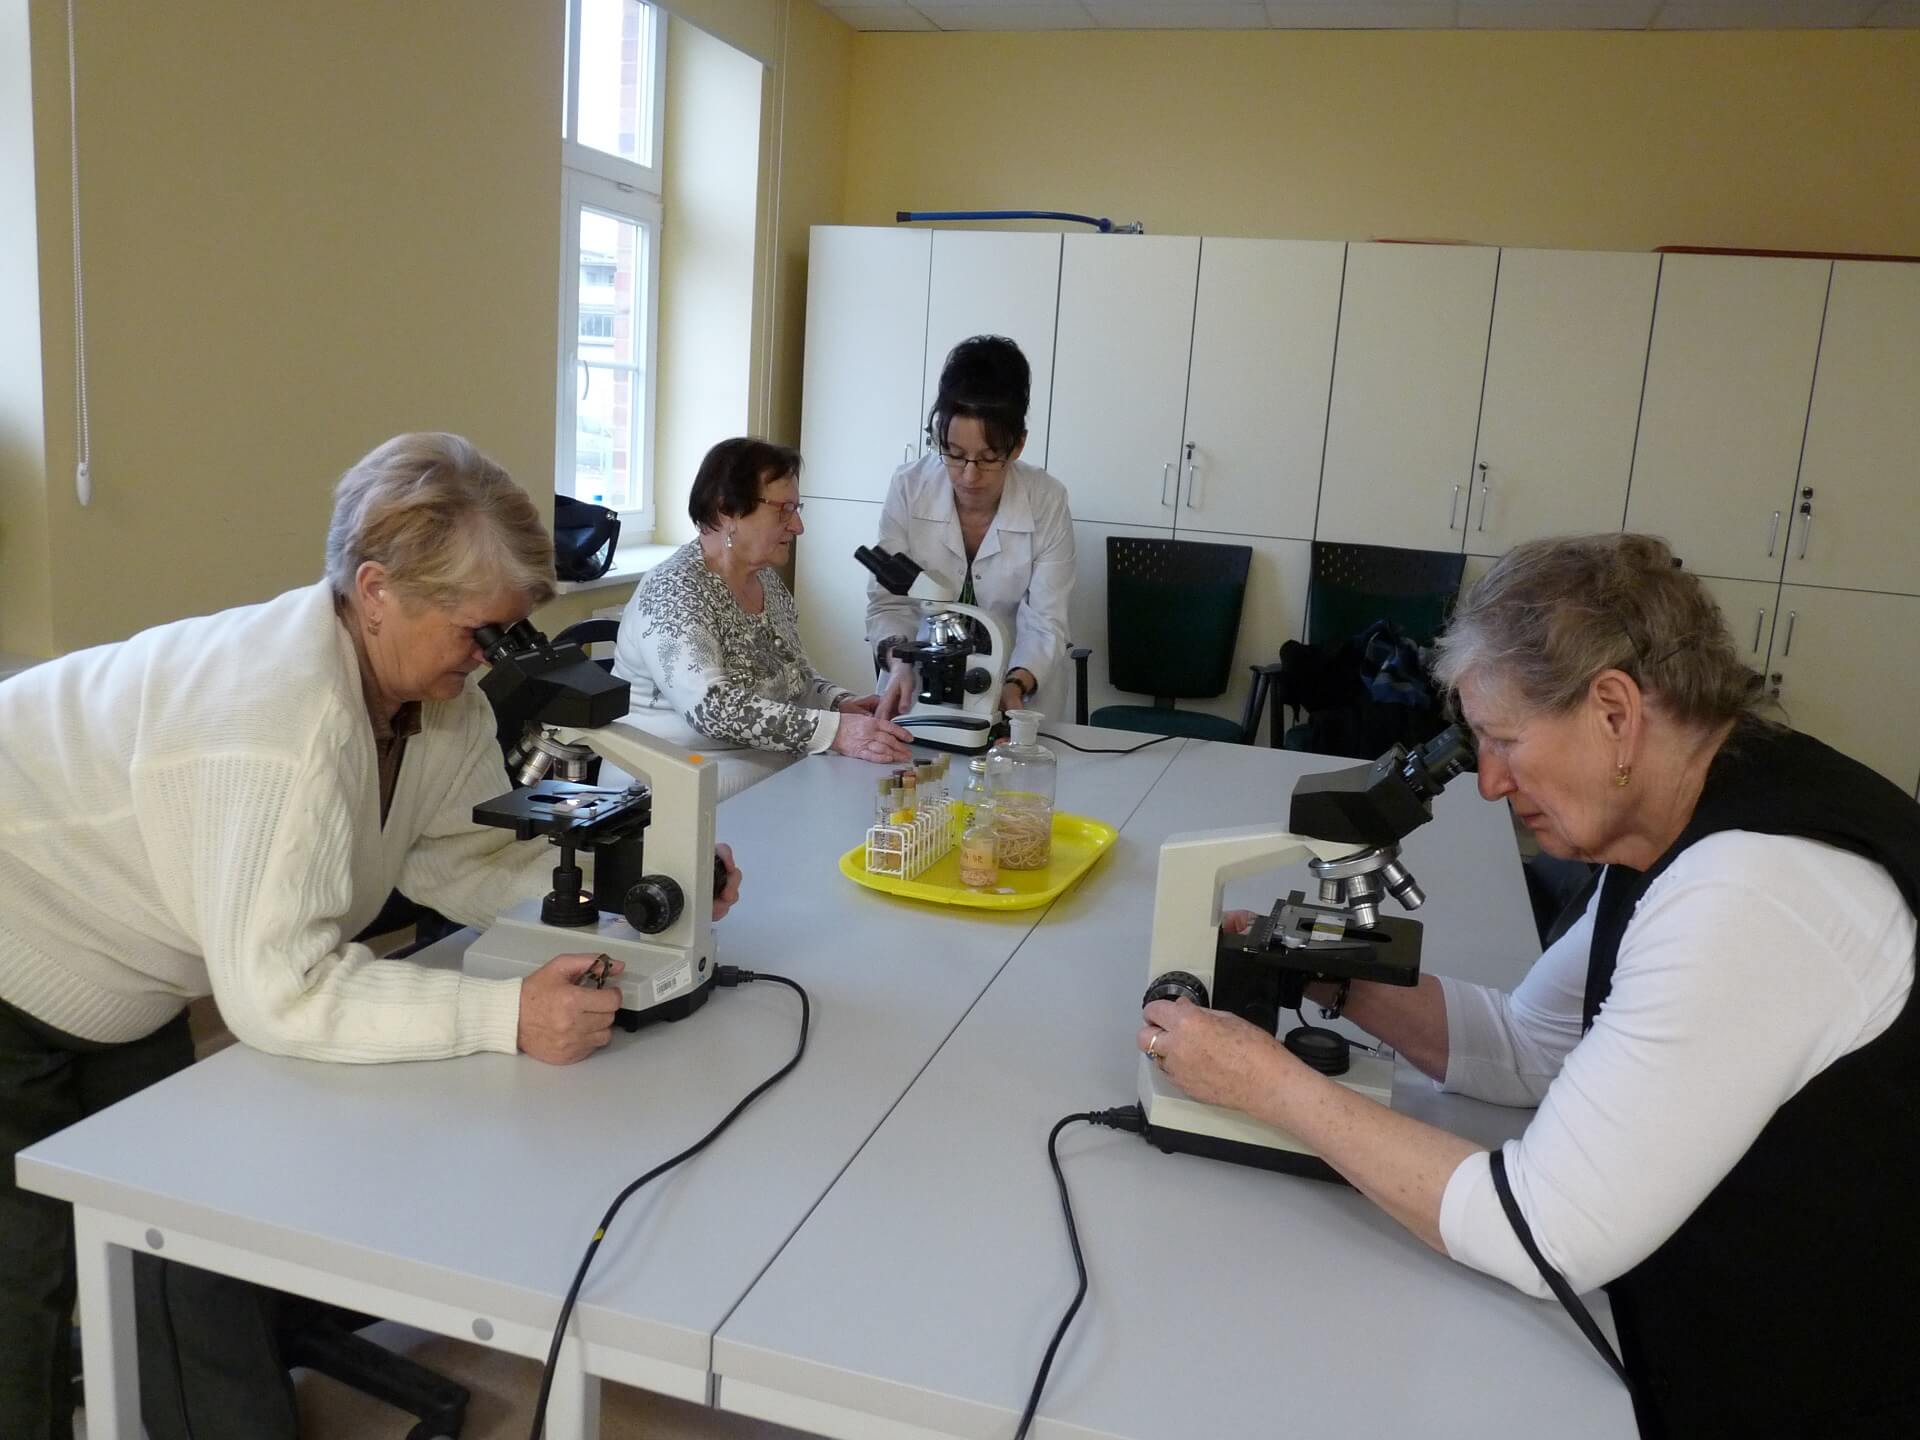 Zajęcia na Wydziale Biotechnologii i Hodowli Zwierząt z udziałem grupy seniorów. Trzy panie prowadzą obserwacje przy mikroskopach pod okiem prowadzącej ubranej w biały kitel